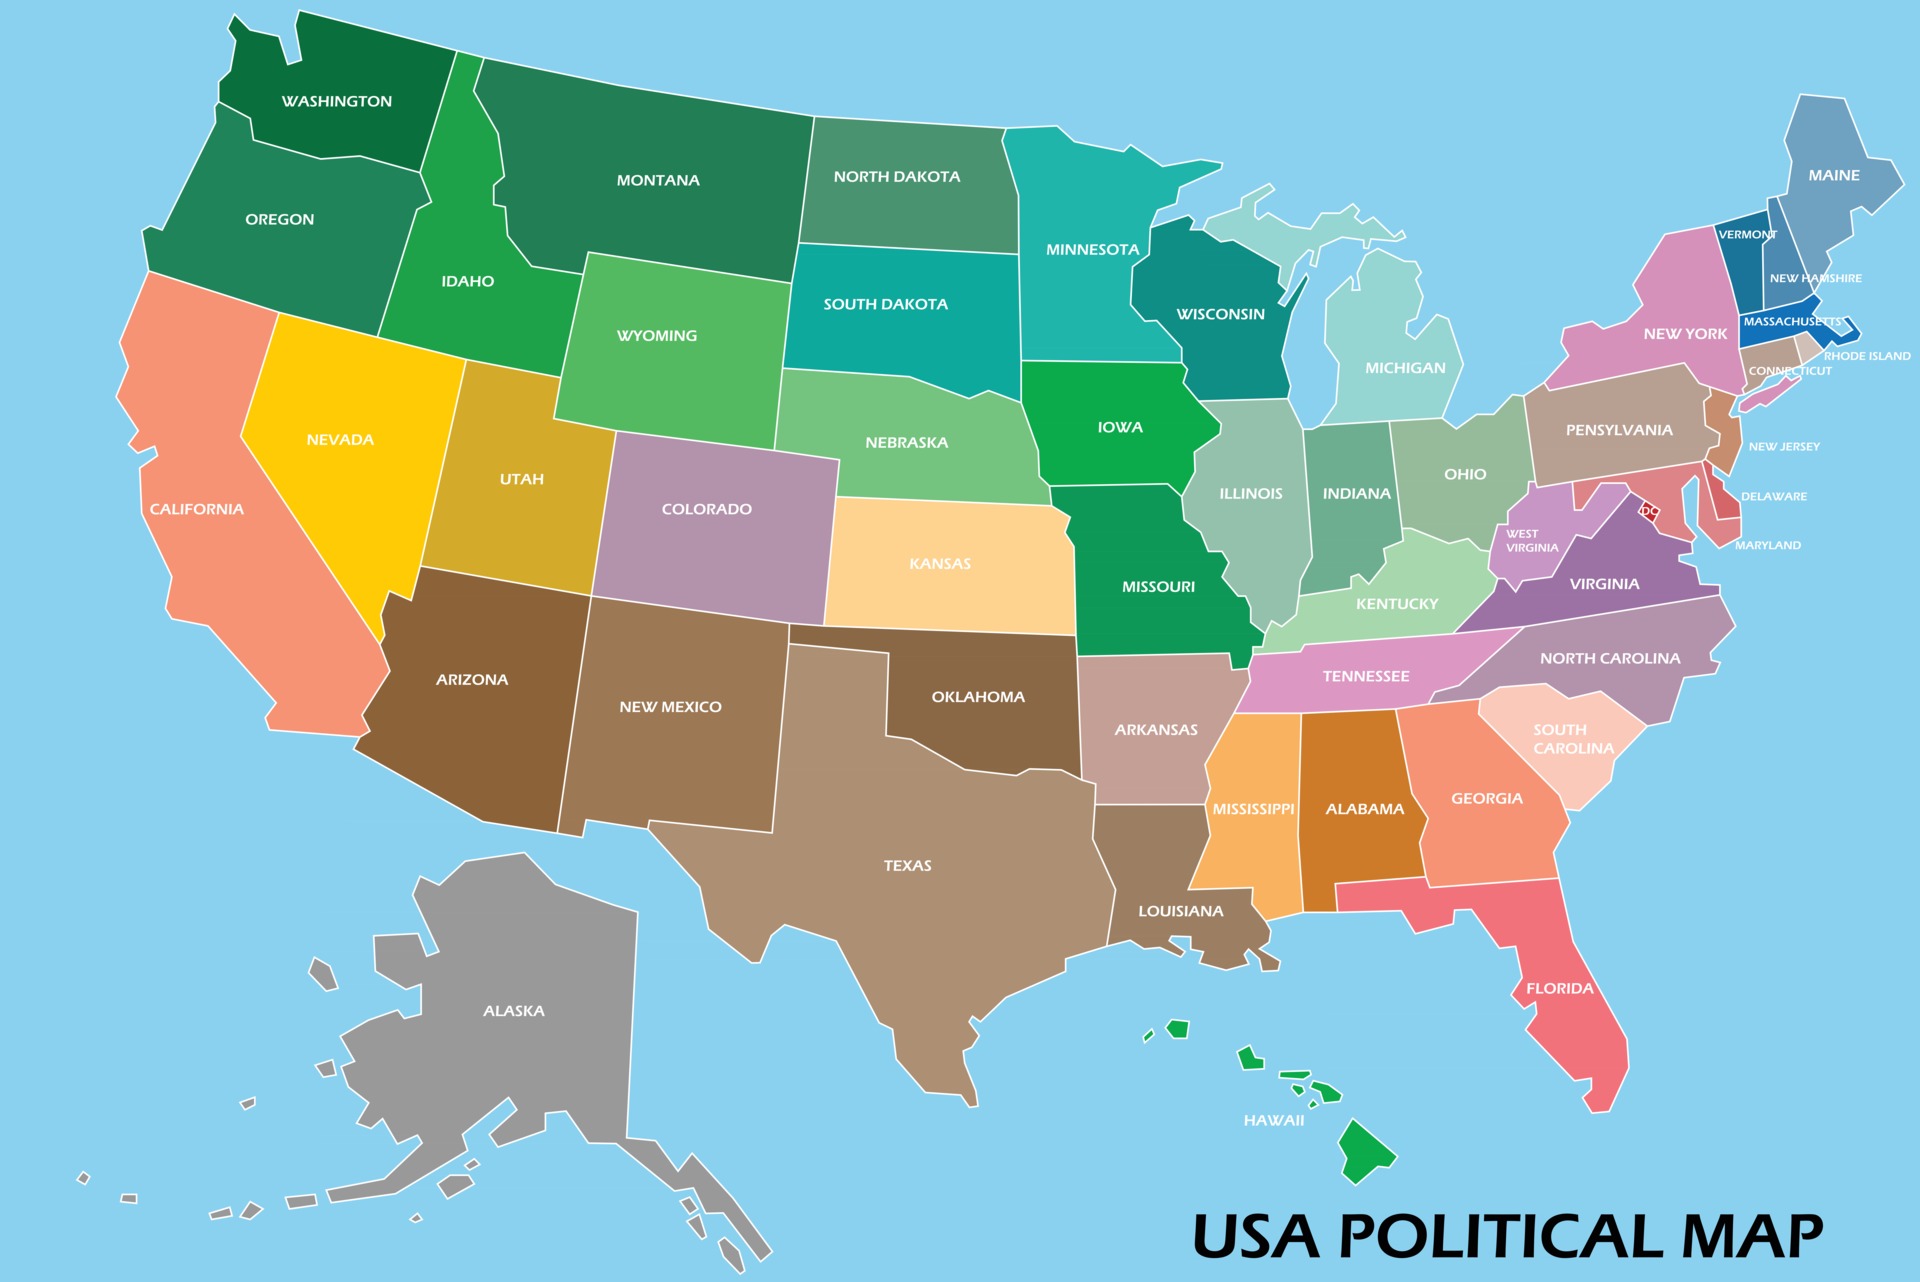 cepillo Ligero Conversacional mapa politico de estados unidos de america 2839378 Vector en Vecteezy